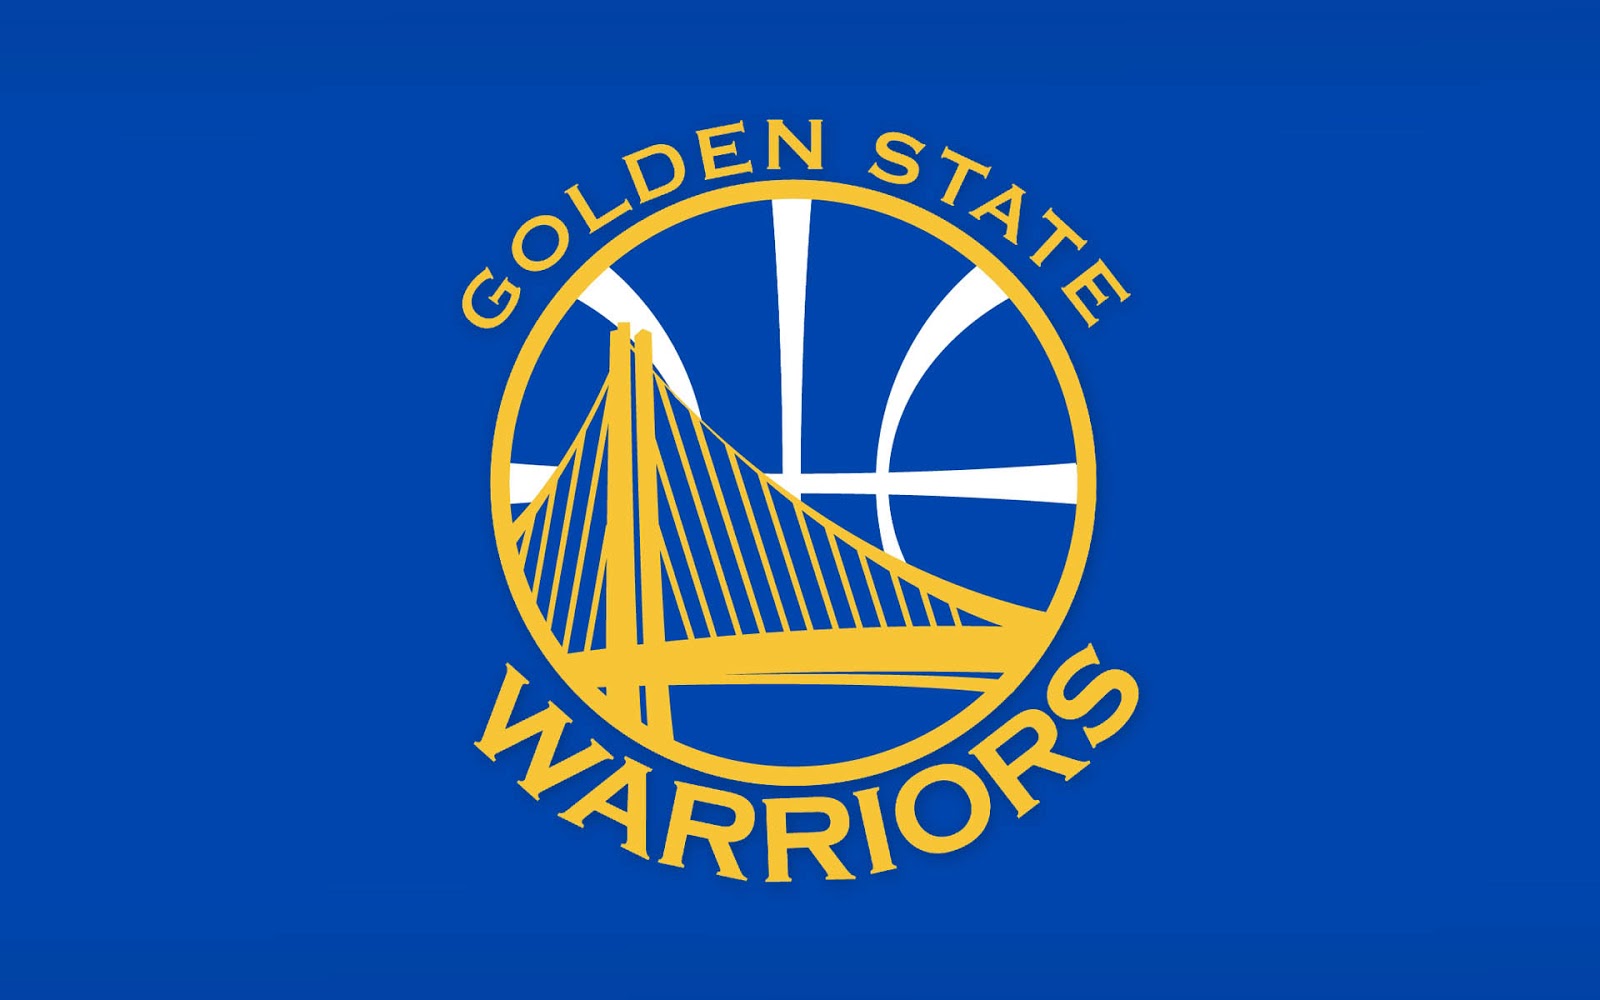 Golden State Warriors logo Wallpaper